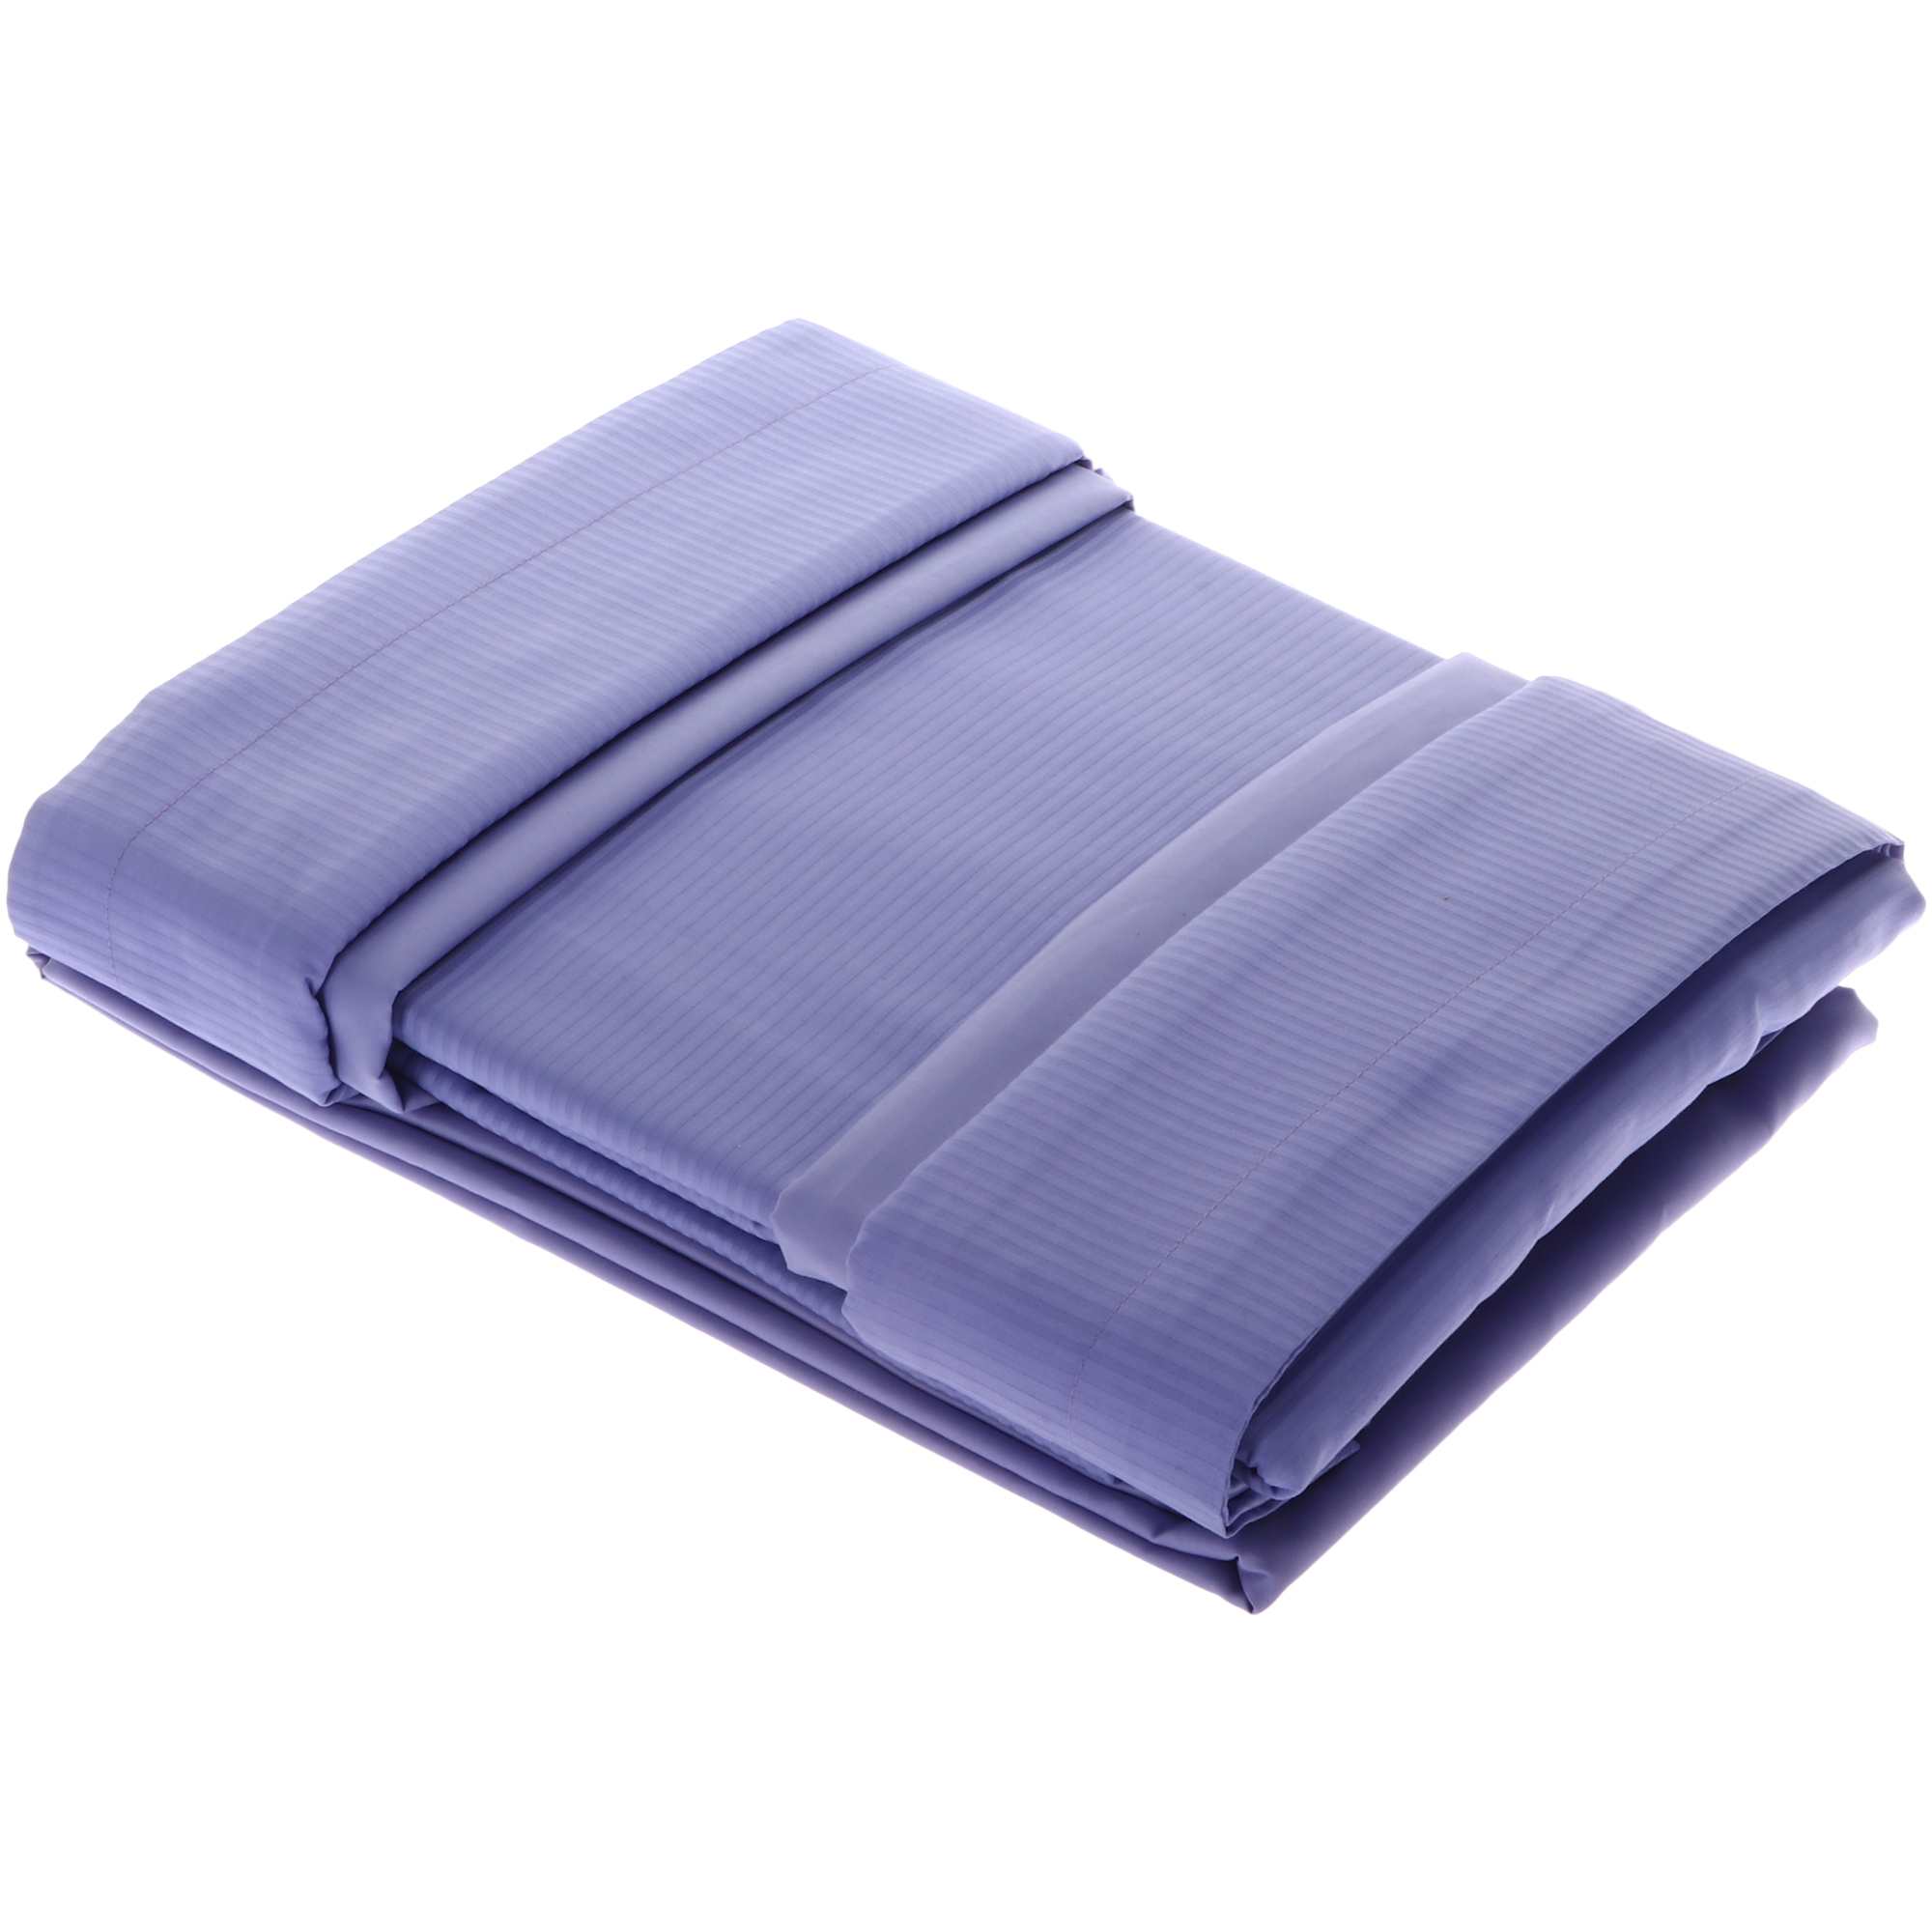 Комплект постельного белья Atalanta home Рэя фиолетовый семейный комплект постельного белья моноспейс сатин фиолетовый семейный фиолетовый сатин